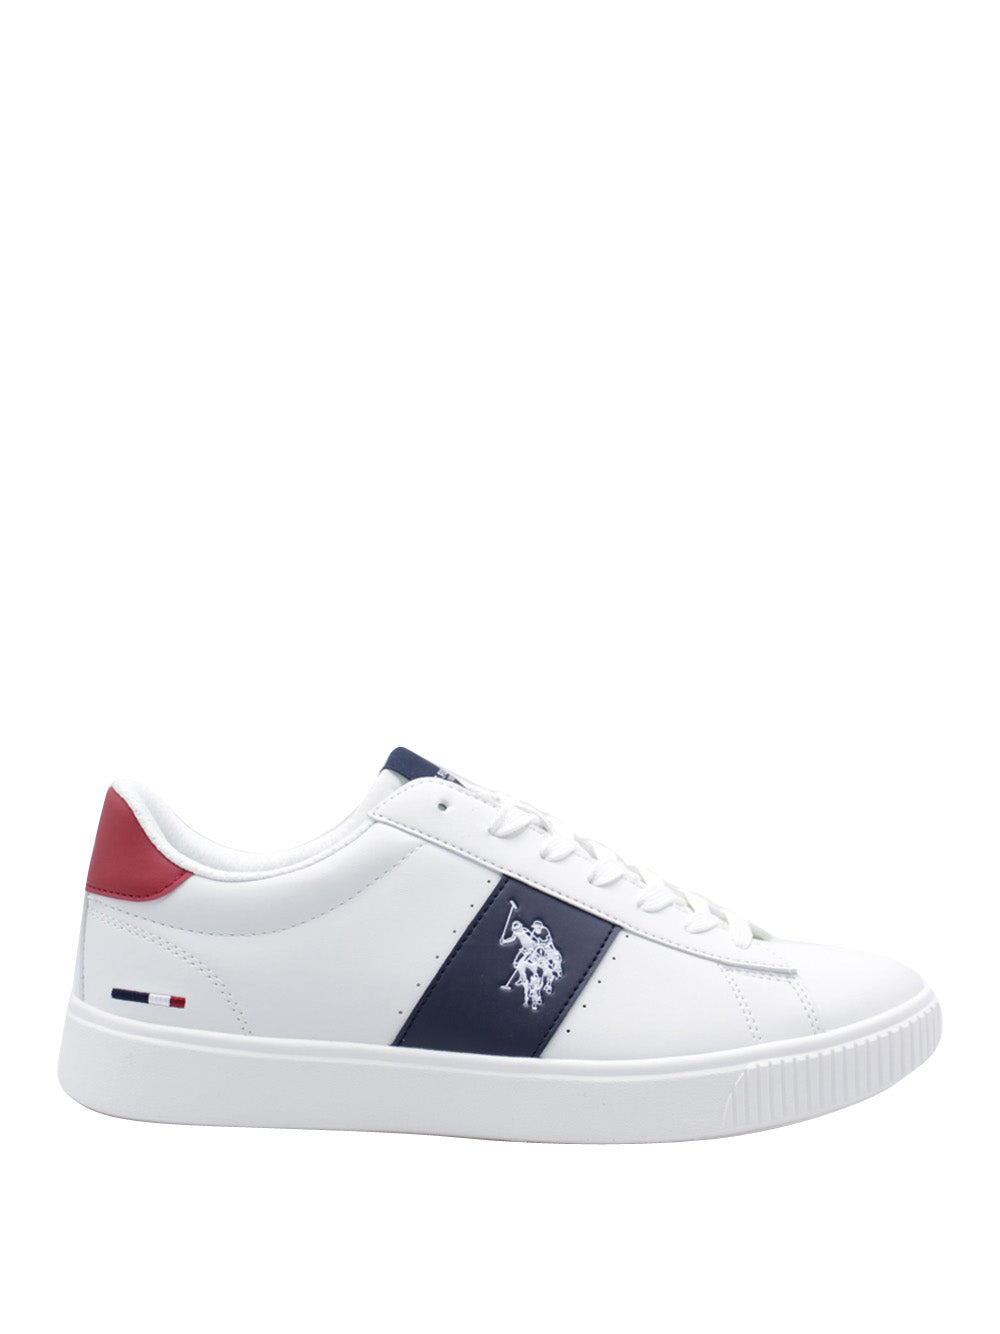 U.S. POLO ASSN. Sneakers Uomo - Bianco modello TYMES009